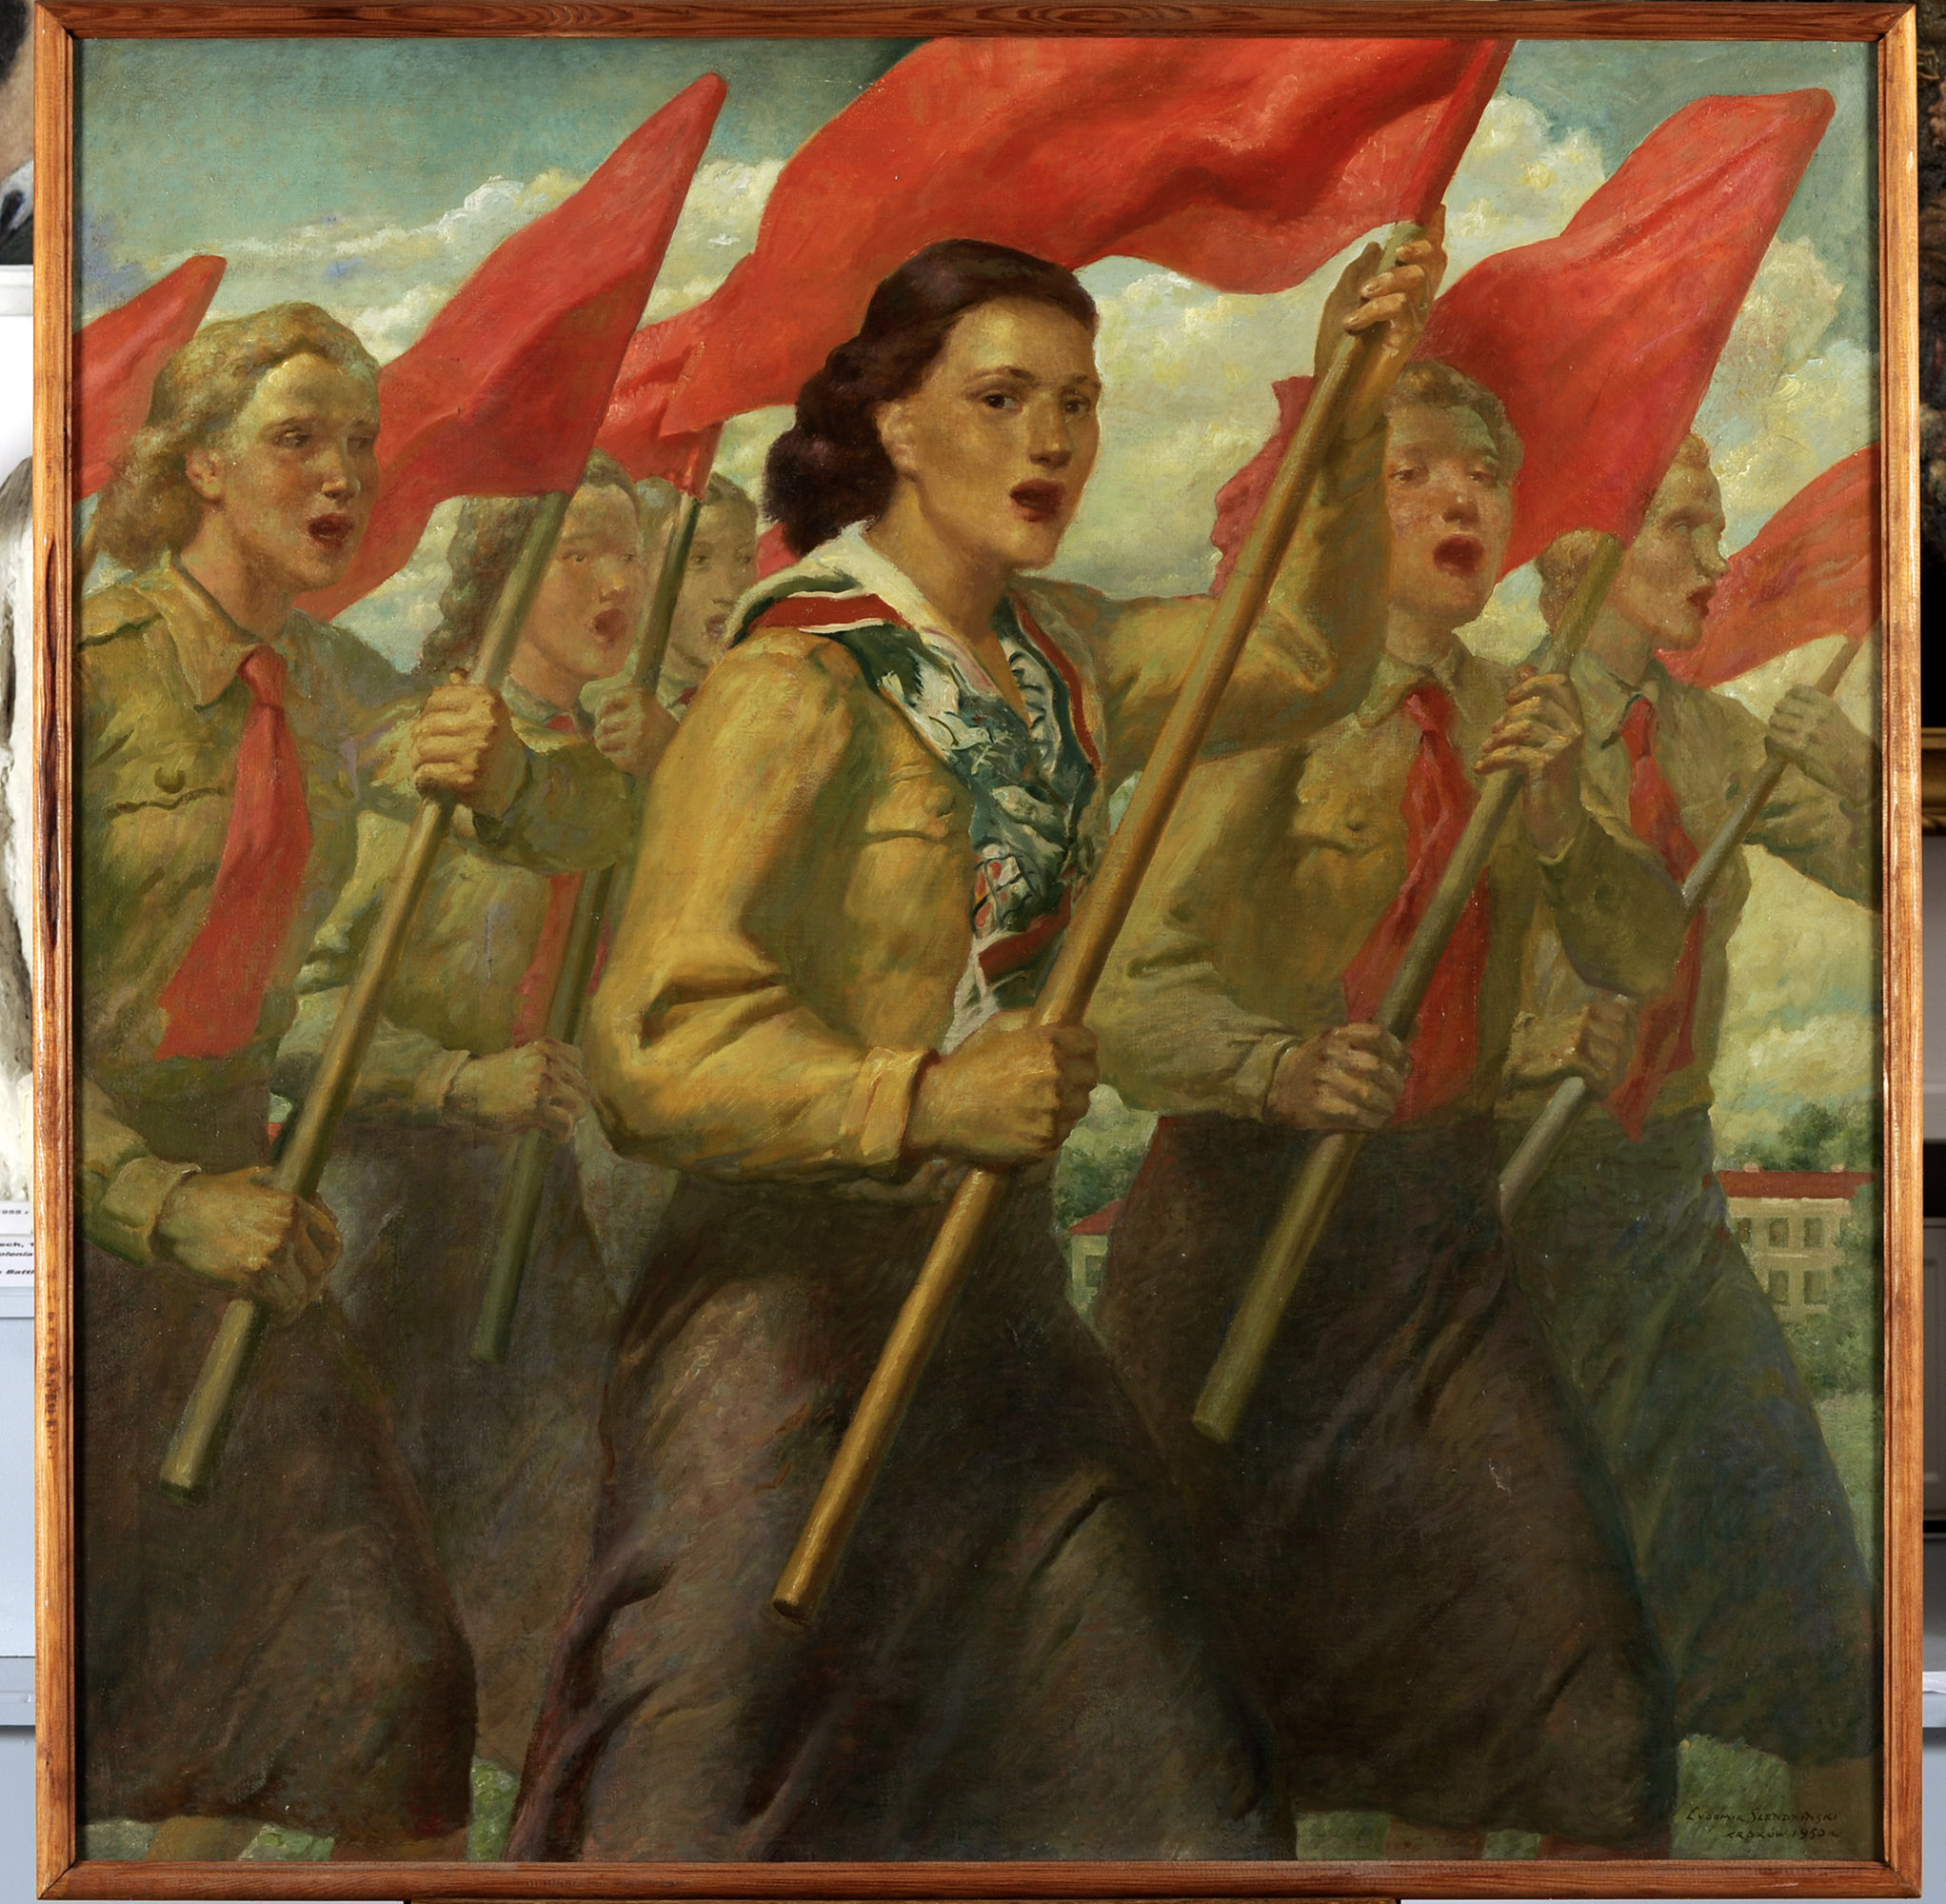 Obraz namalowany farbami olejnymi na płótnie z 1950 roku, autorstwa Ludomira Śledzińskiego, zatytułowany Wolny śpiew. Sześć dziewcząt maszerujących z czerwonymi flagami, ma usta rozchylone do śpiewu. Ubrane są w stroje organizacji Związku Młodzieży Polskiej, mają czerwone krawaty, jasne brązowo-zielone bluzy, spódnice ciemniejsze brązowe przechodzące w zieleń i fiolet. Dziewczyna w centrum kompozycji ma kasztanowe falujące włosy, zamiast krawata ma wzorzystą apaszkę z wzorem gołąbka pokoju. Pozostałe manifestantki to blondynki. W tle budynek z czerwonym dachem wśród zieleni i szarobłękitne, lekko zachmurzone niebo.